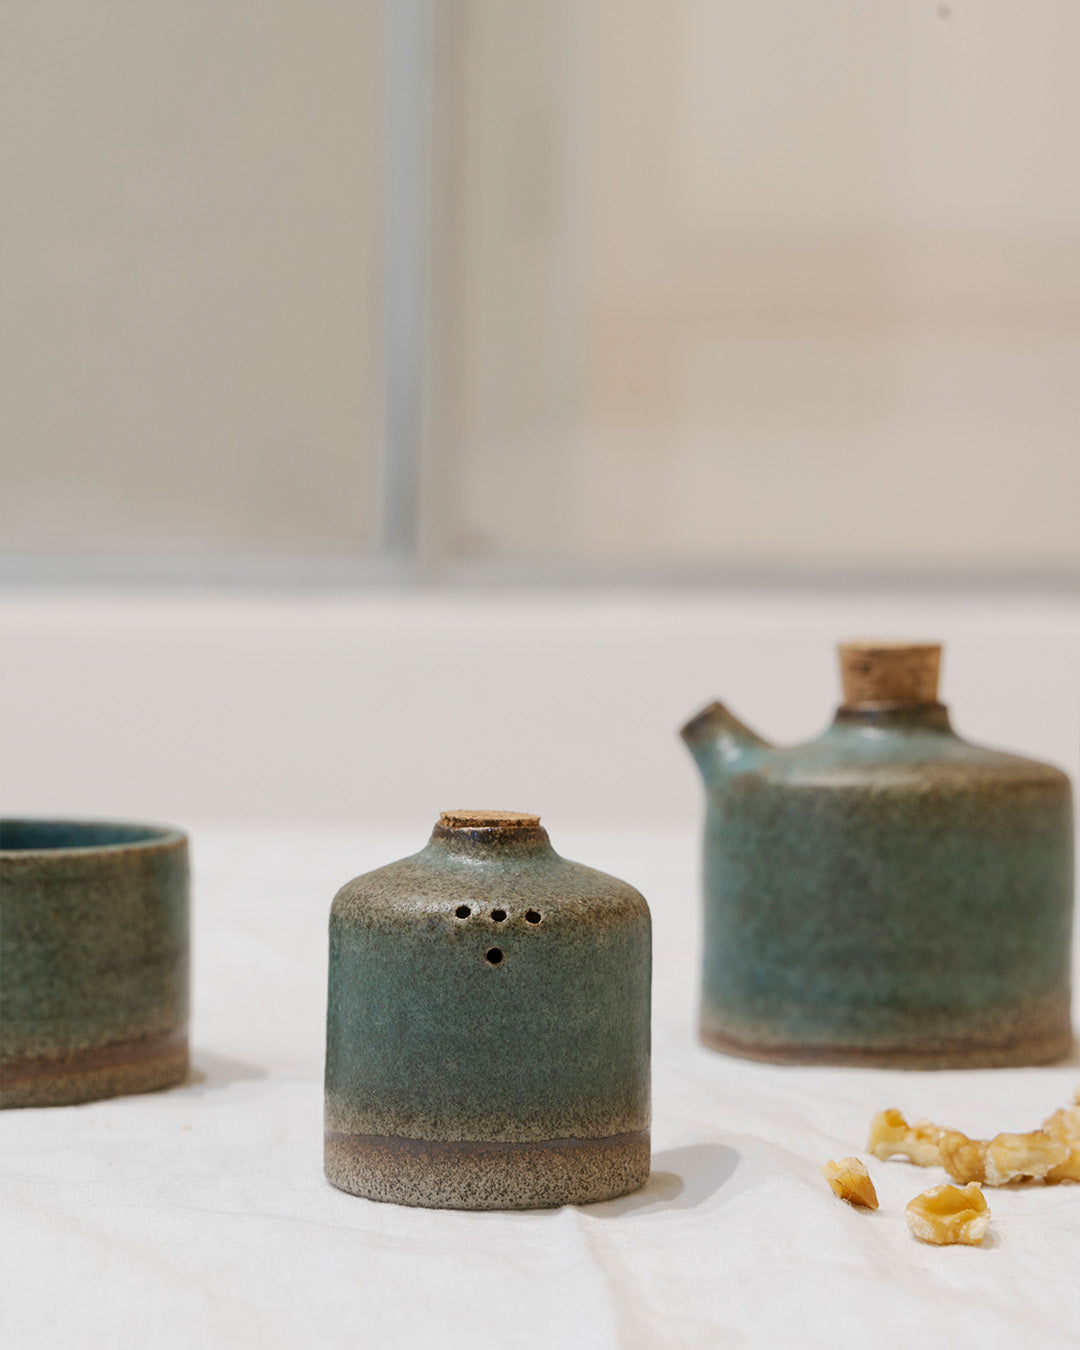  Ceramic handcrafted salt and pepper cruets